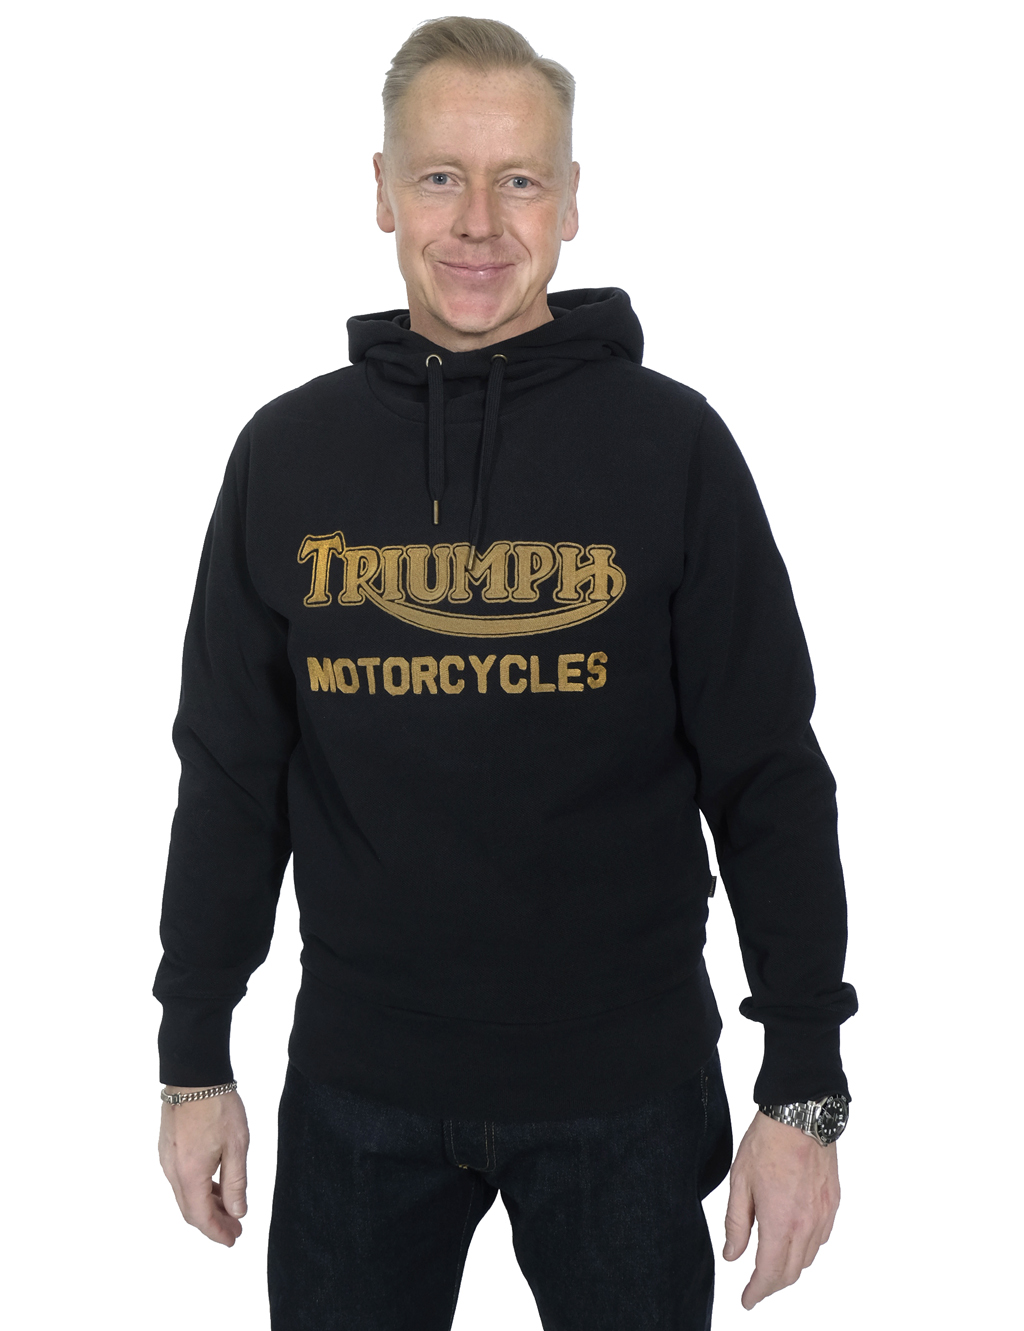 Triumph Motorcycles - Lount Double Pique Hoodie - Jet Black